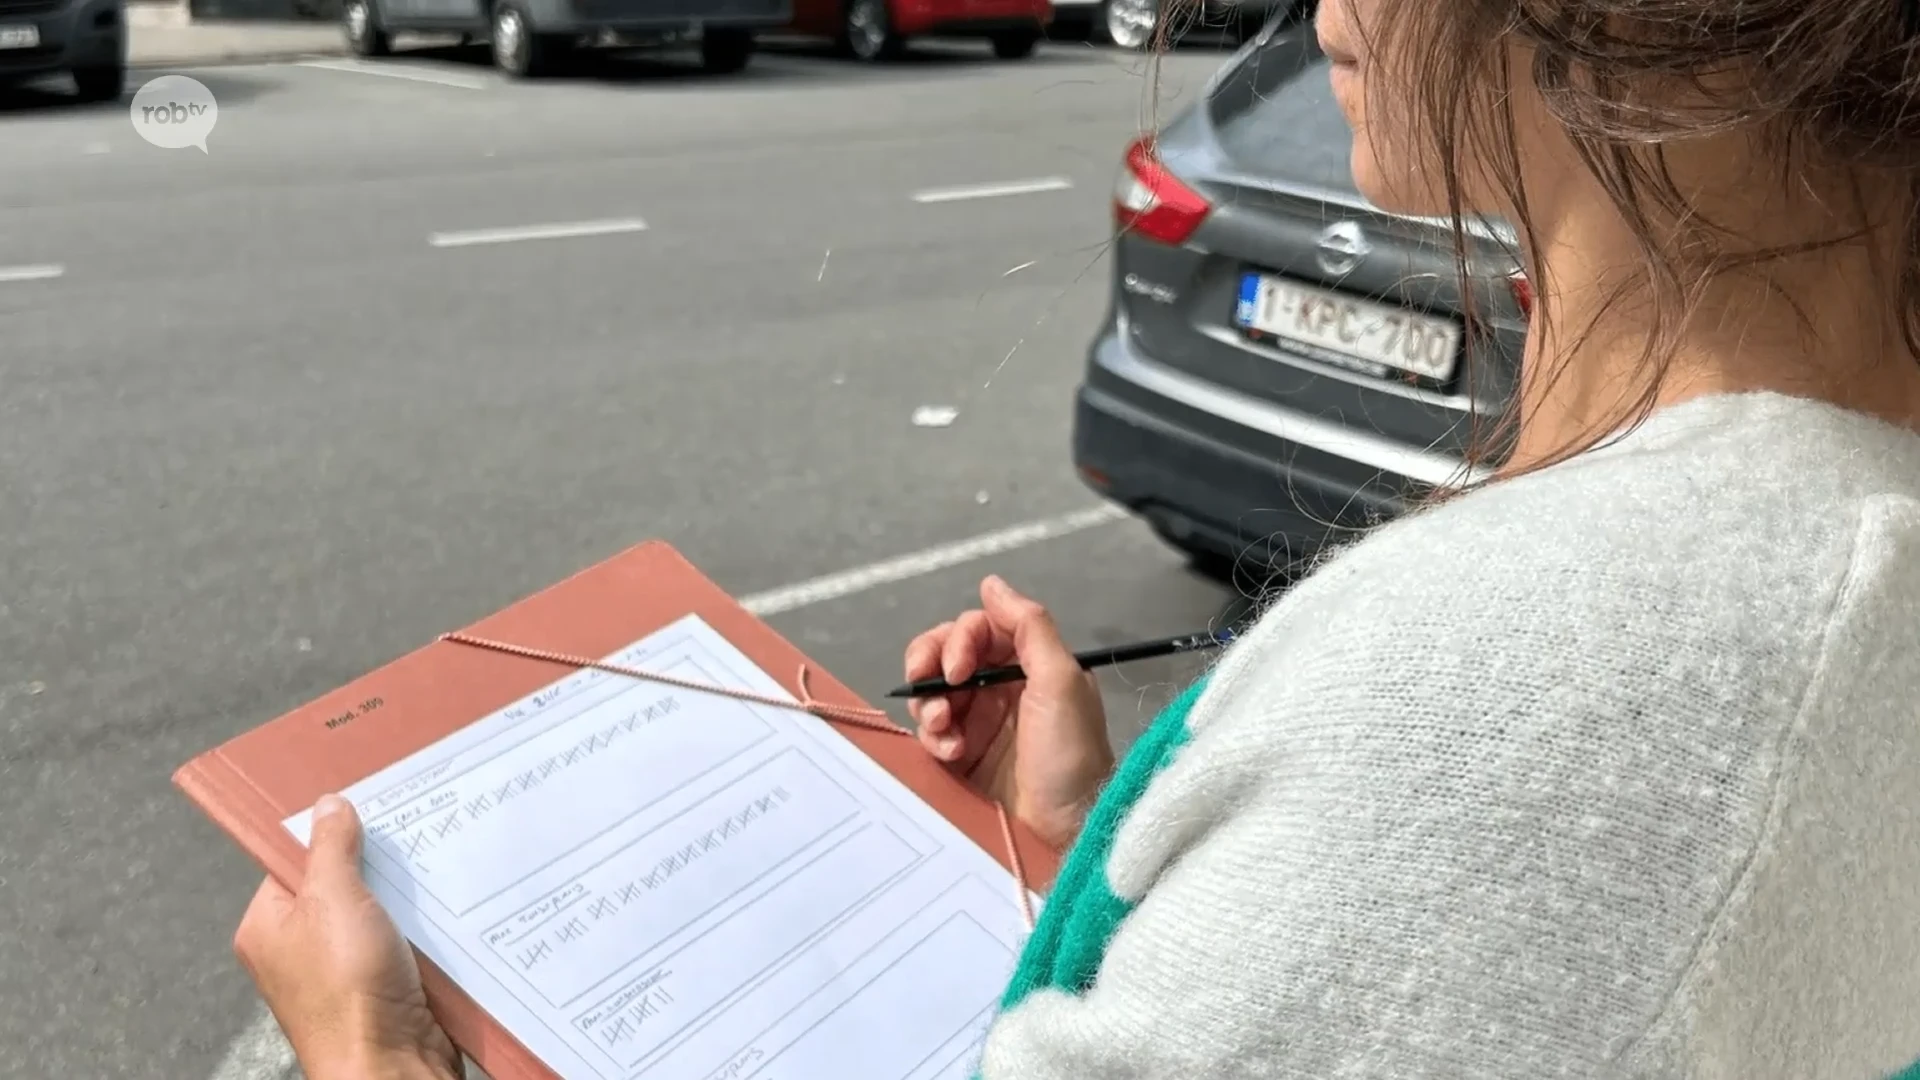 Actiecomité in Tienen doet eigen verkeerstellingen: "Bereikbaarheidsplan gaat situatie verergeren"